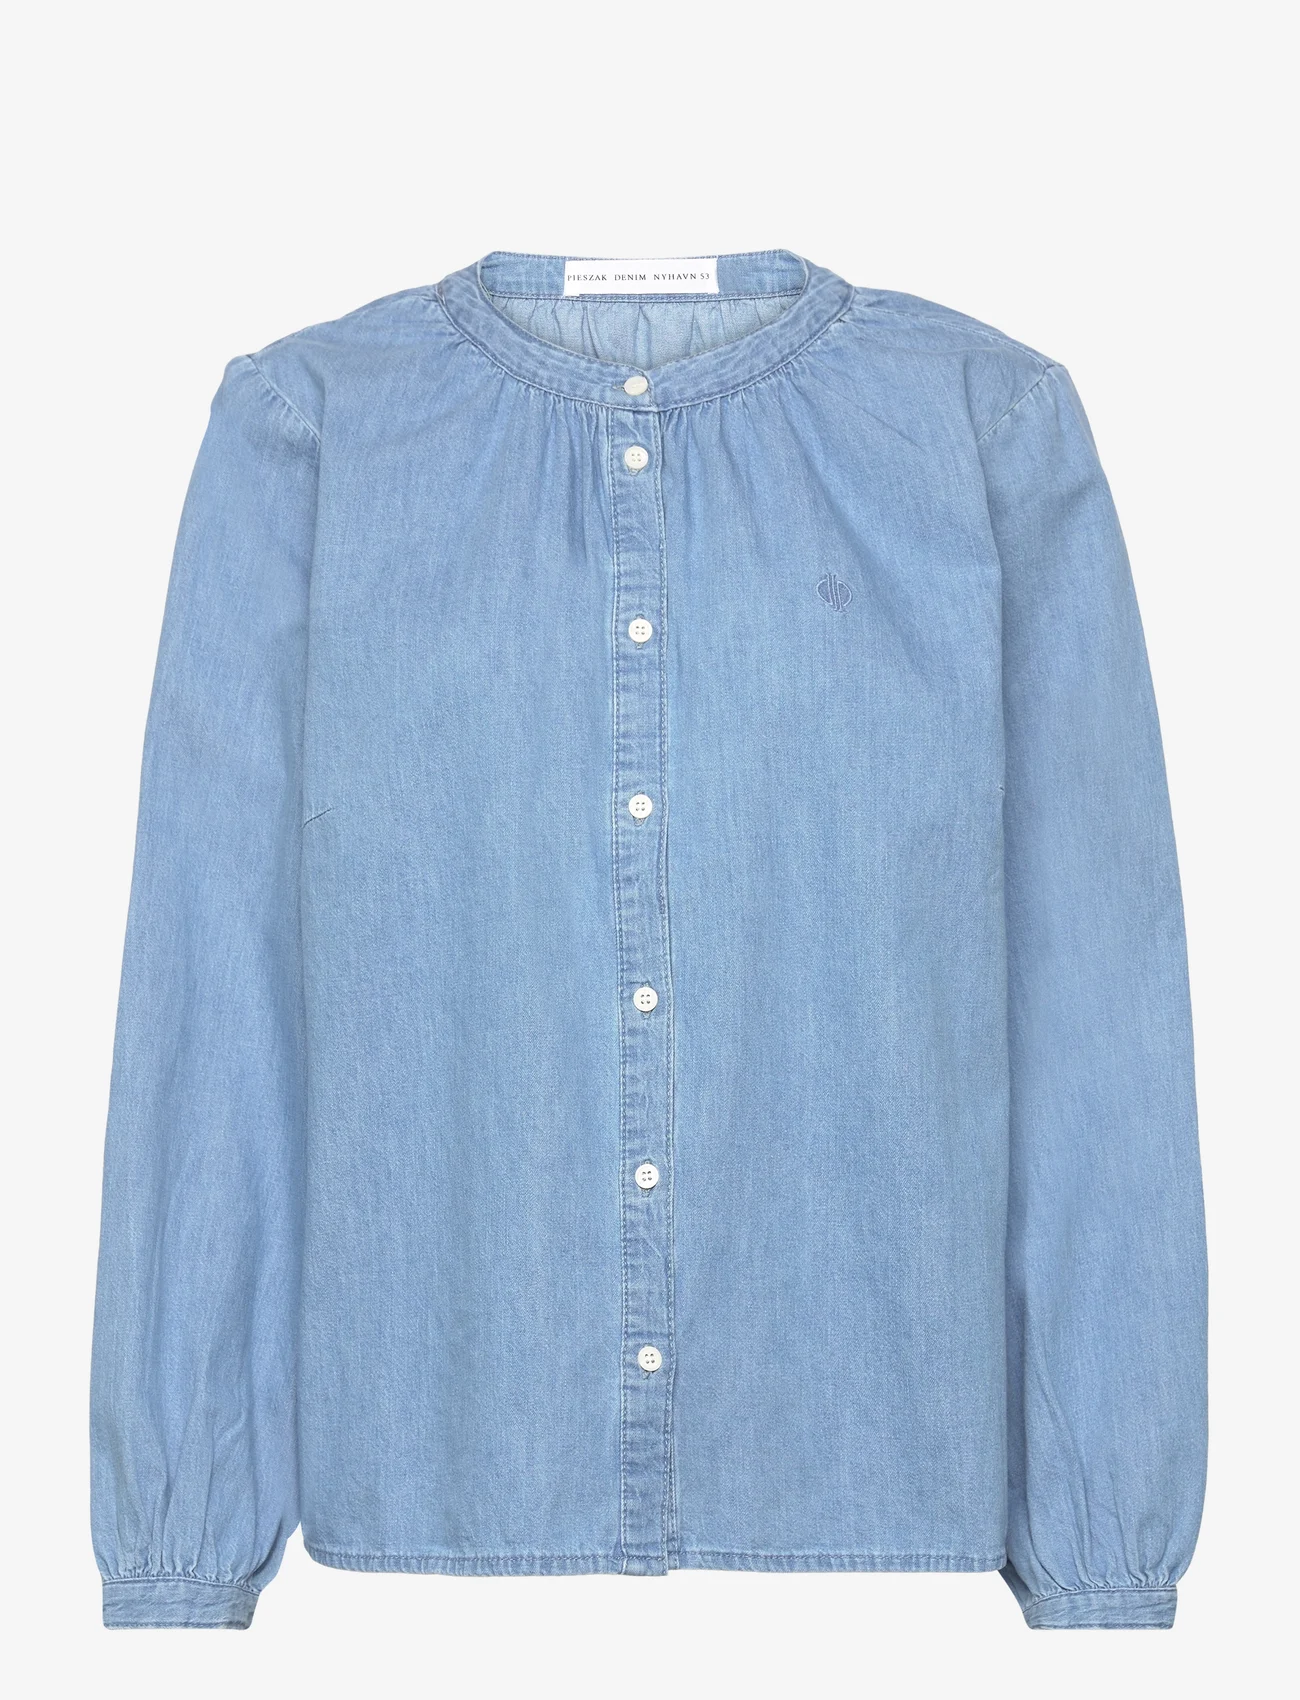 Pieszak - PD-Luna Denim Shirt - džinsa krekli - denim blue - 0